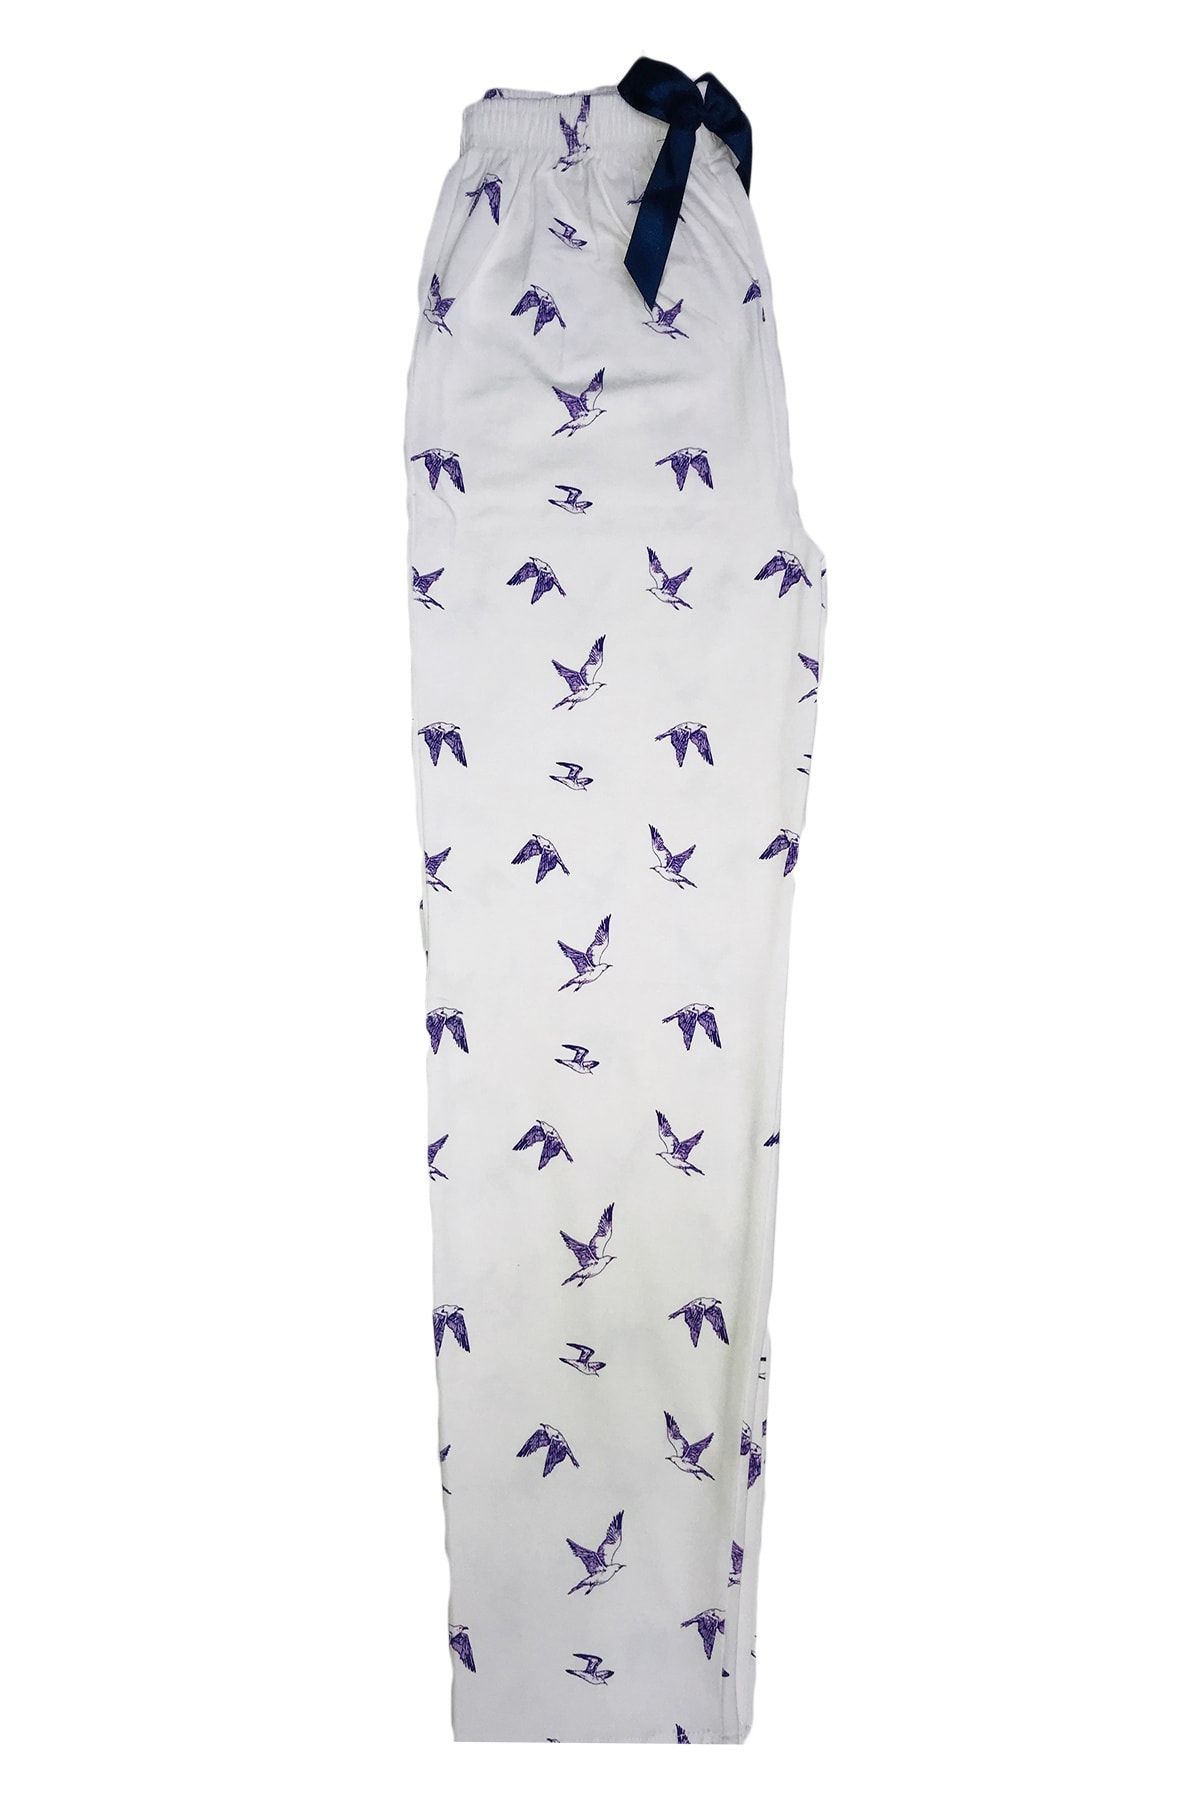 Yağmur Tekstil 1. Kalite %100 Pamuk Beyaz Kadın Tek Alt Pijama Altı